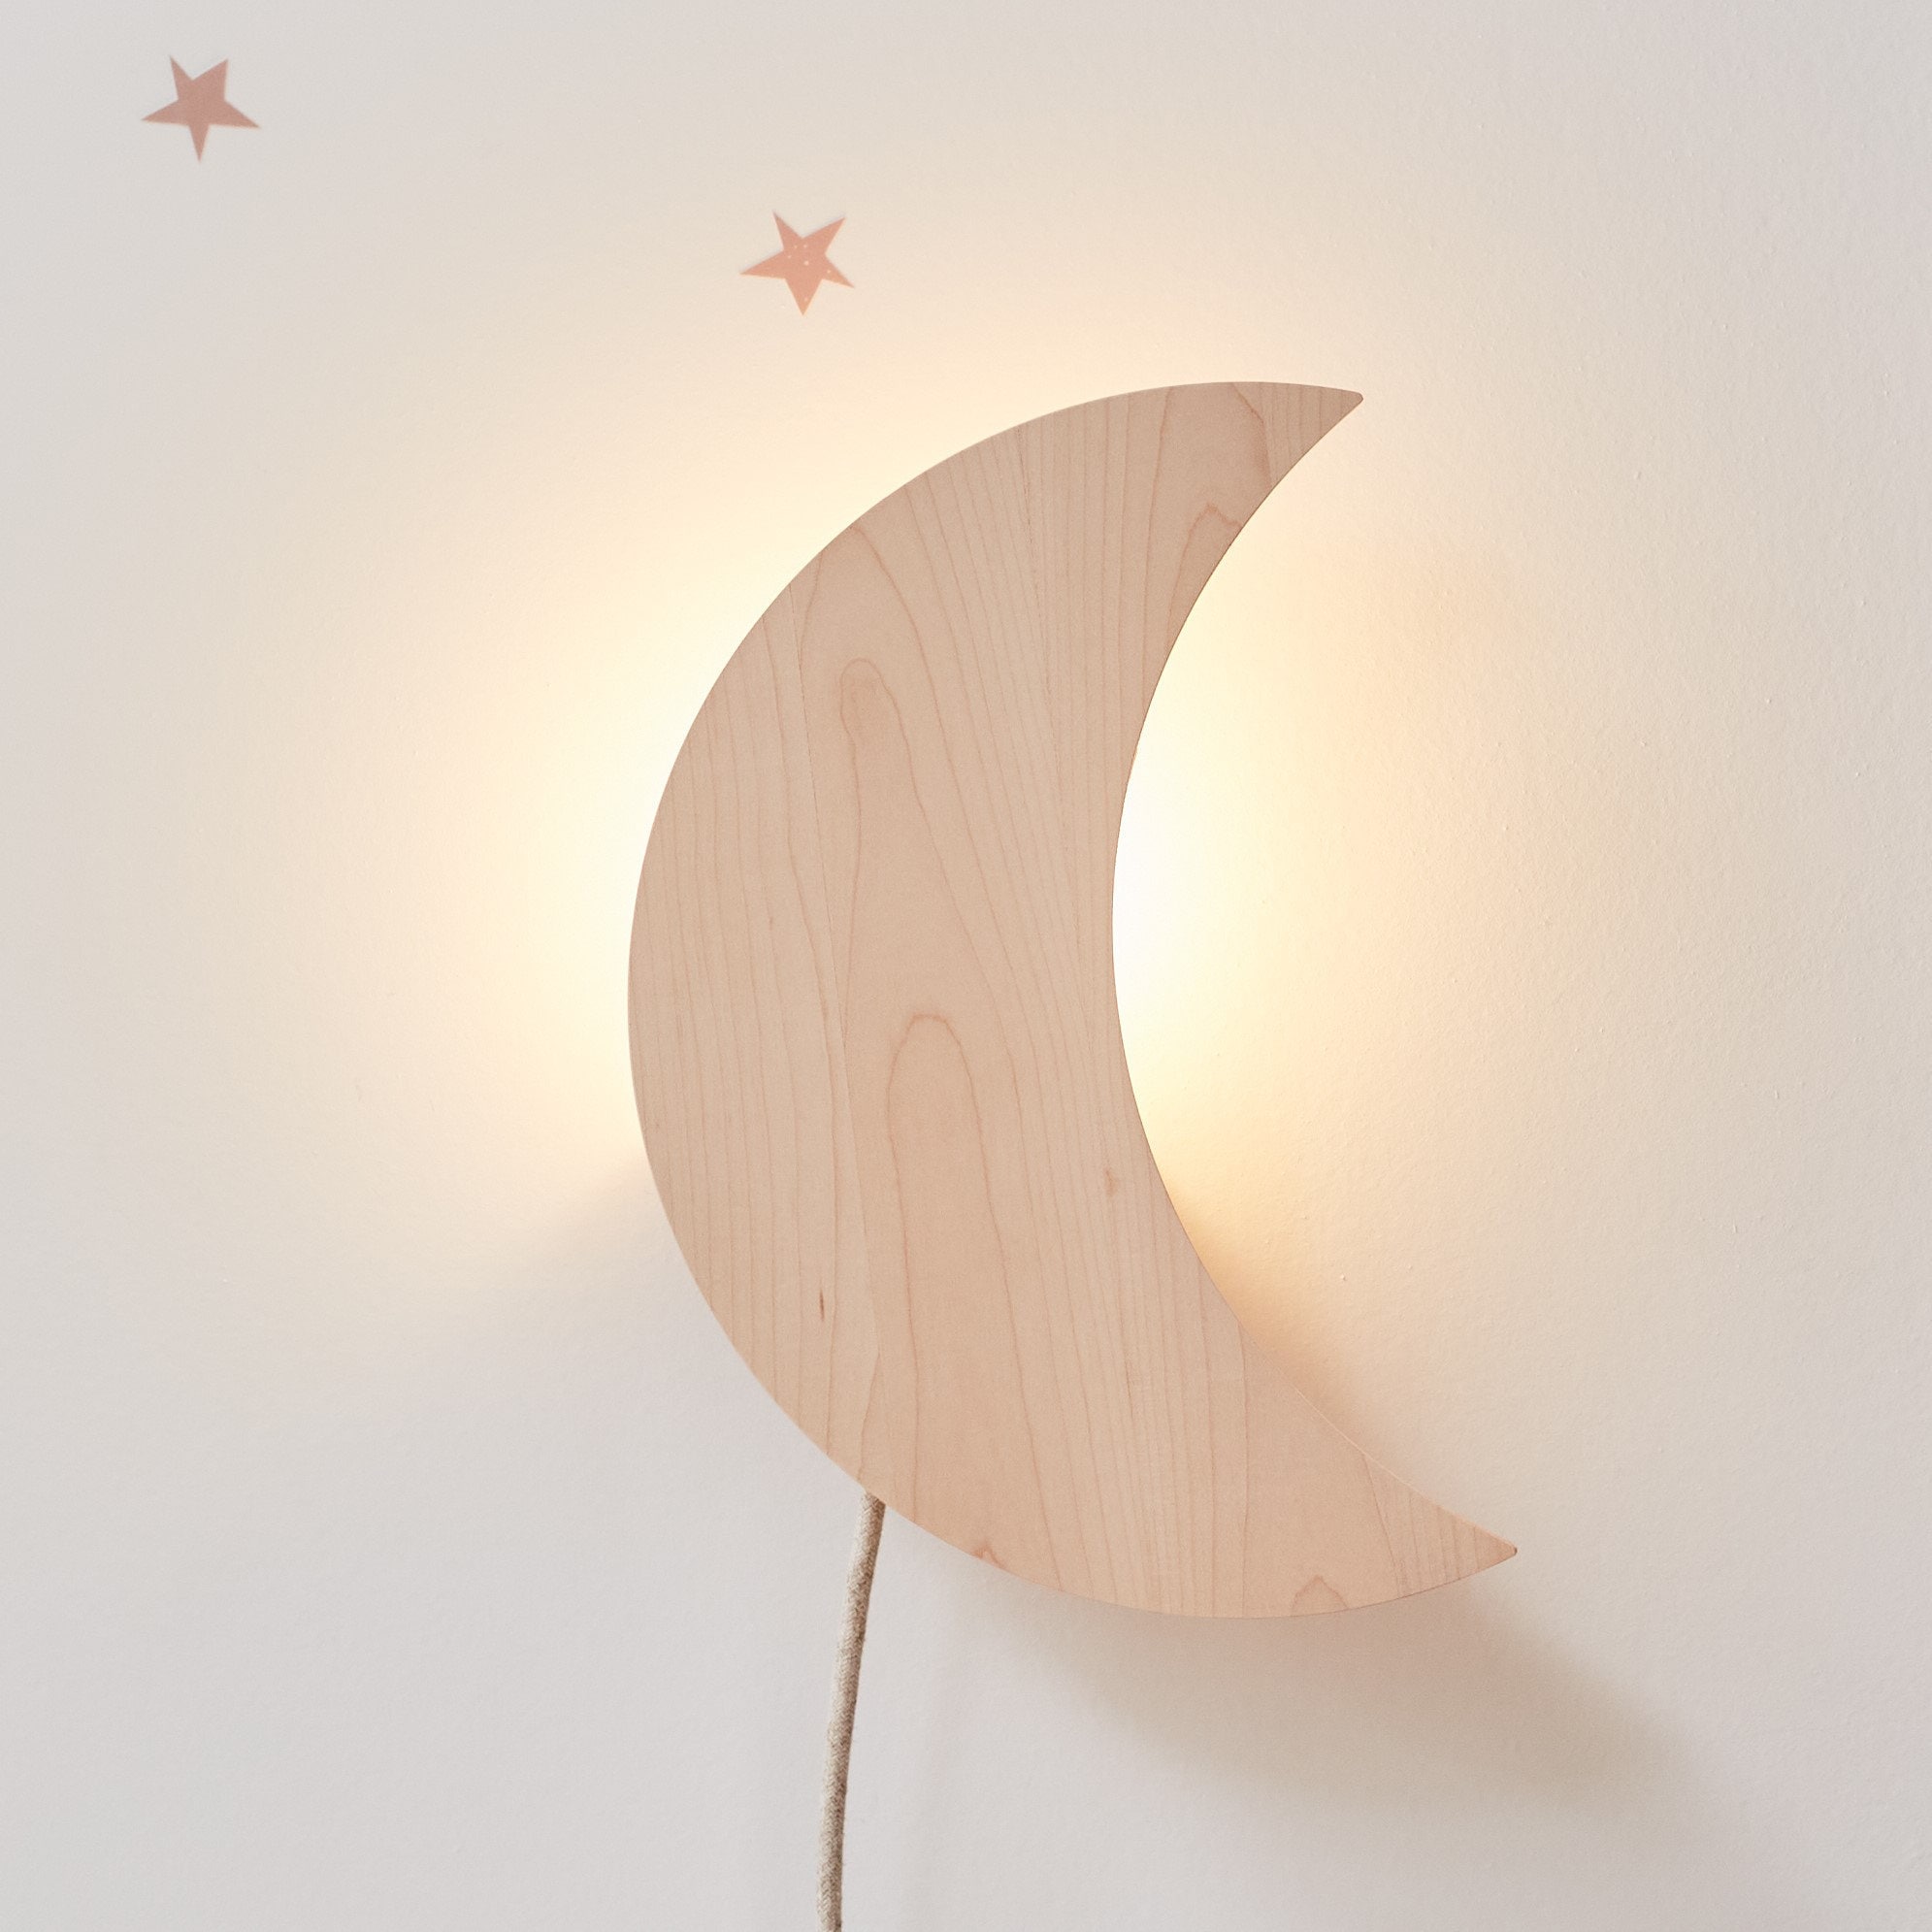 The Crescent Moon Hanging Lamp [USA Shipping] - Royal Moon Lamp